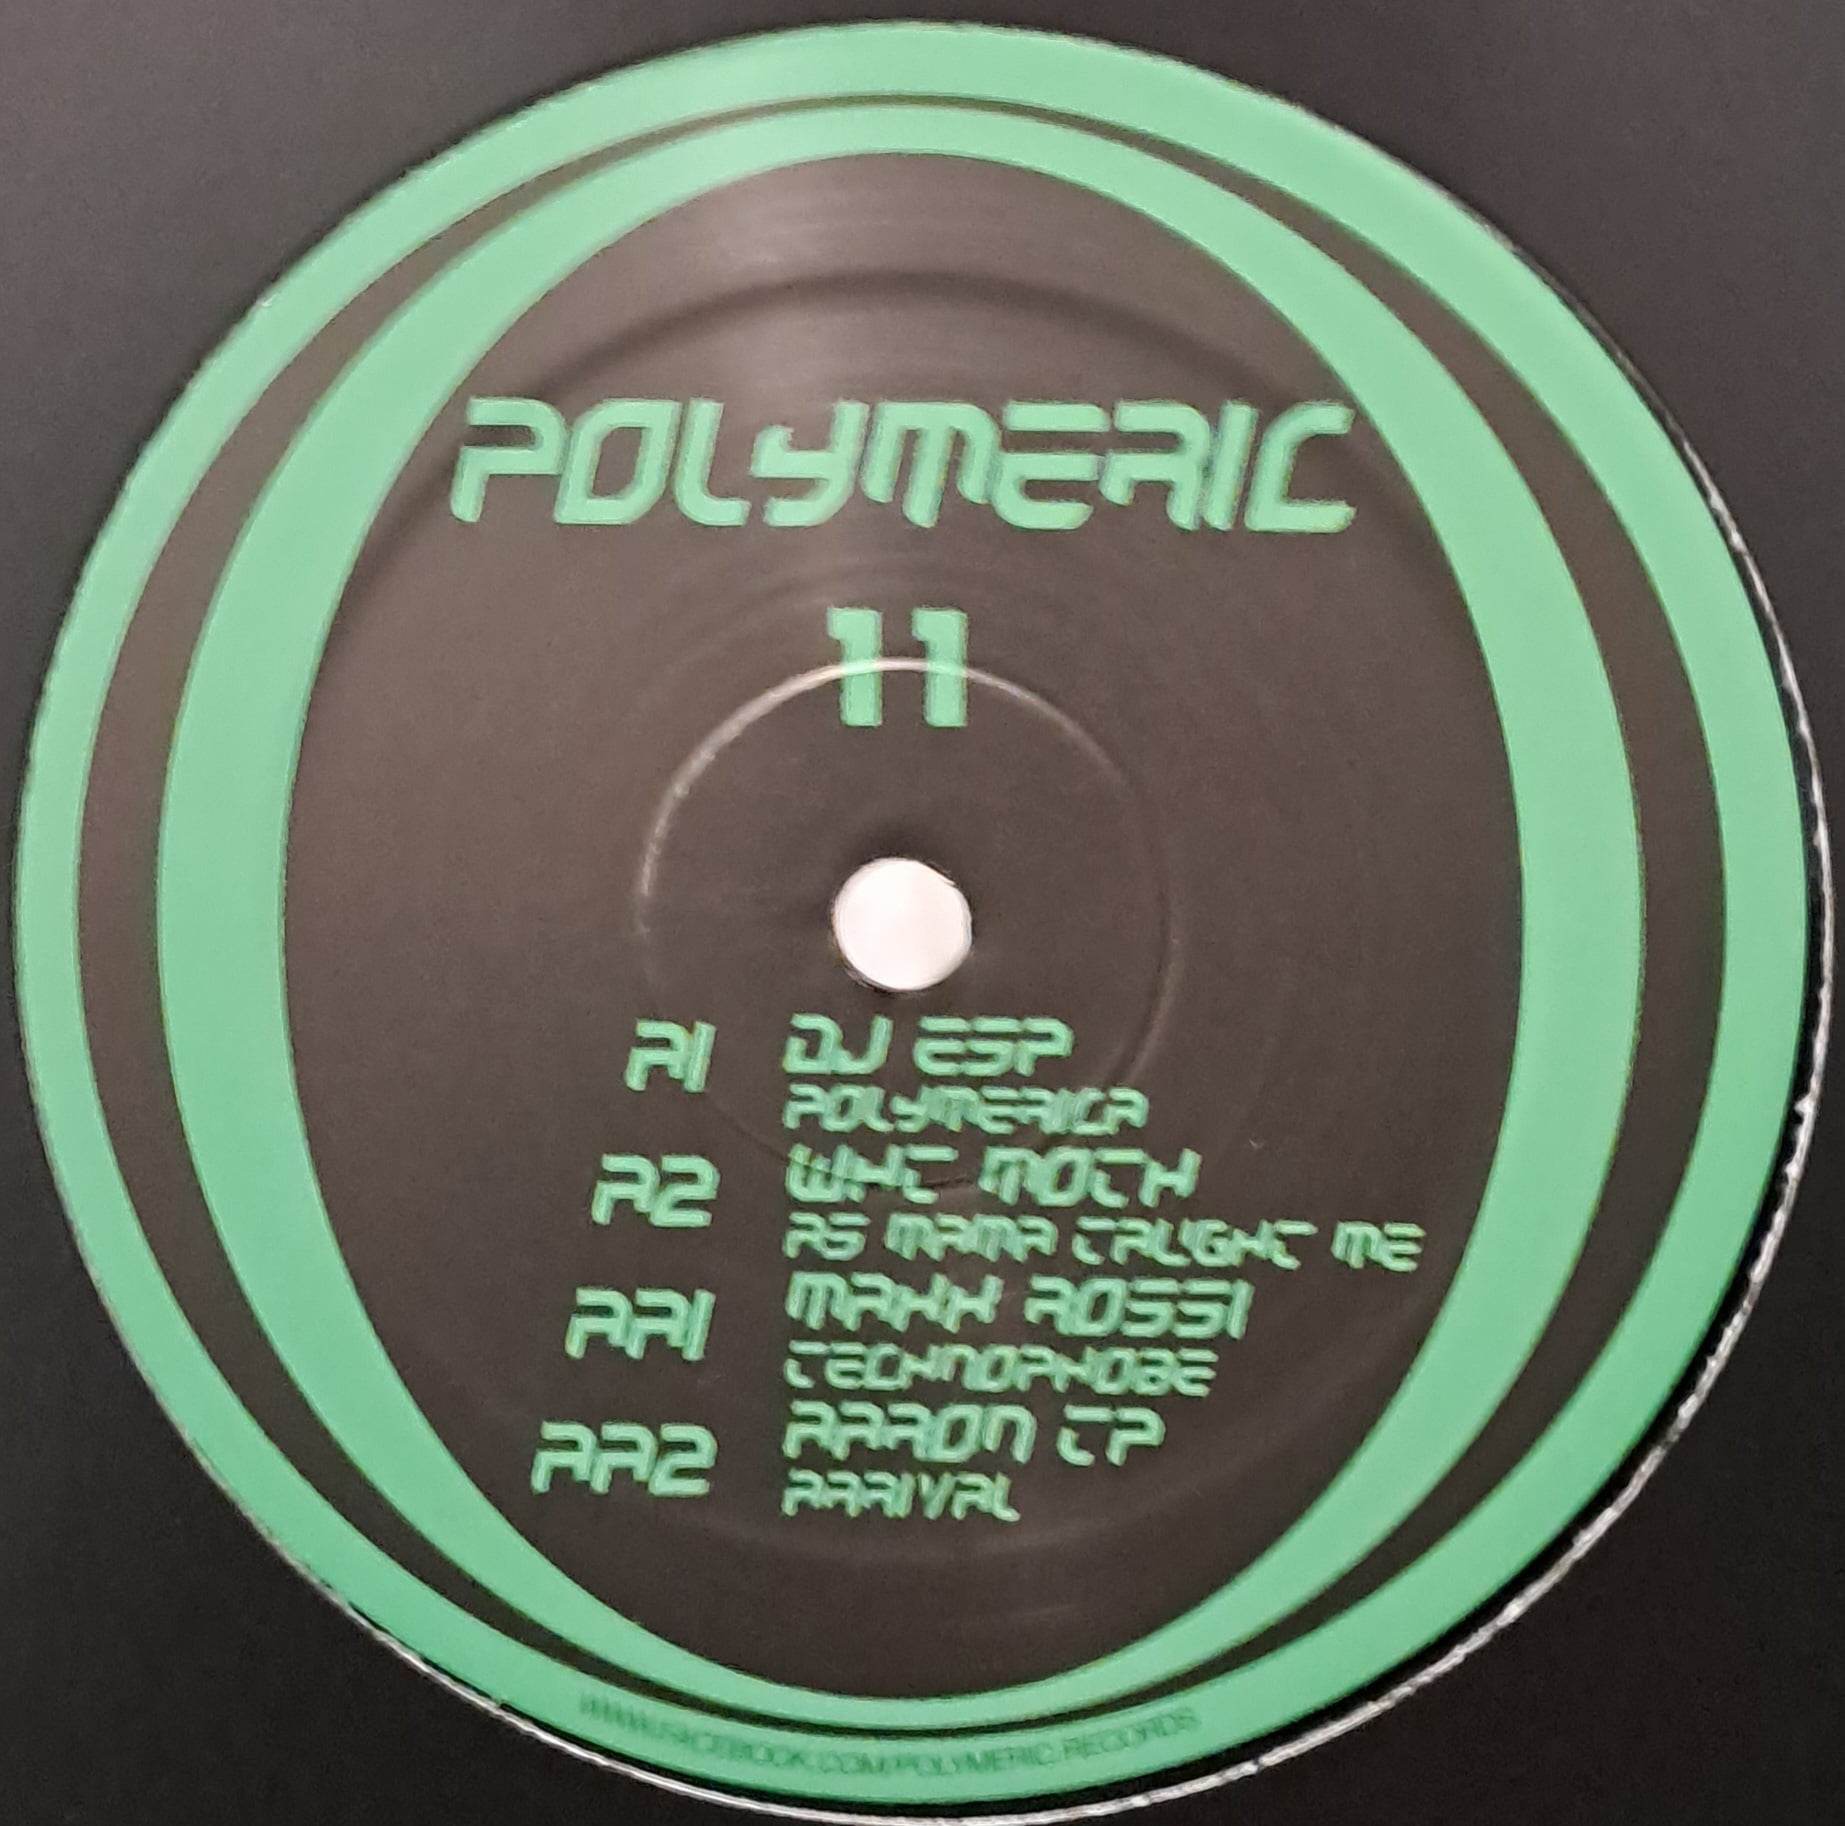 Polymeric 11 (toute dernière copie en stock) - vinyle electro